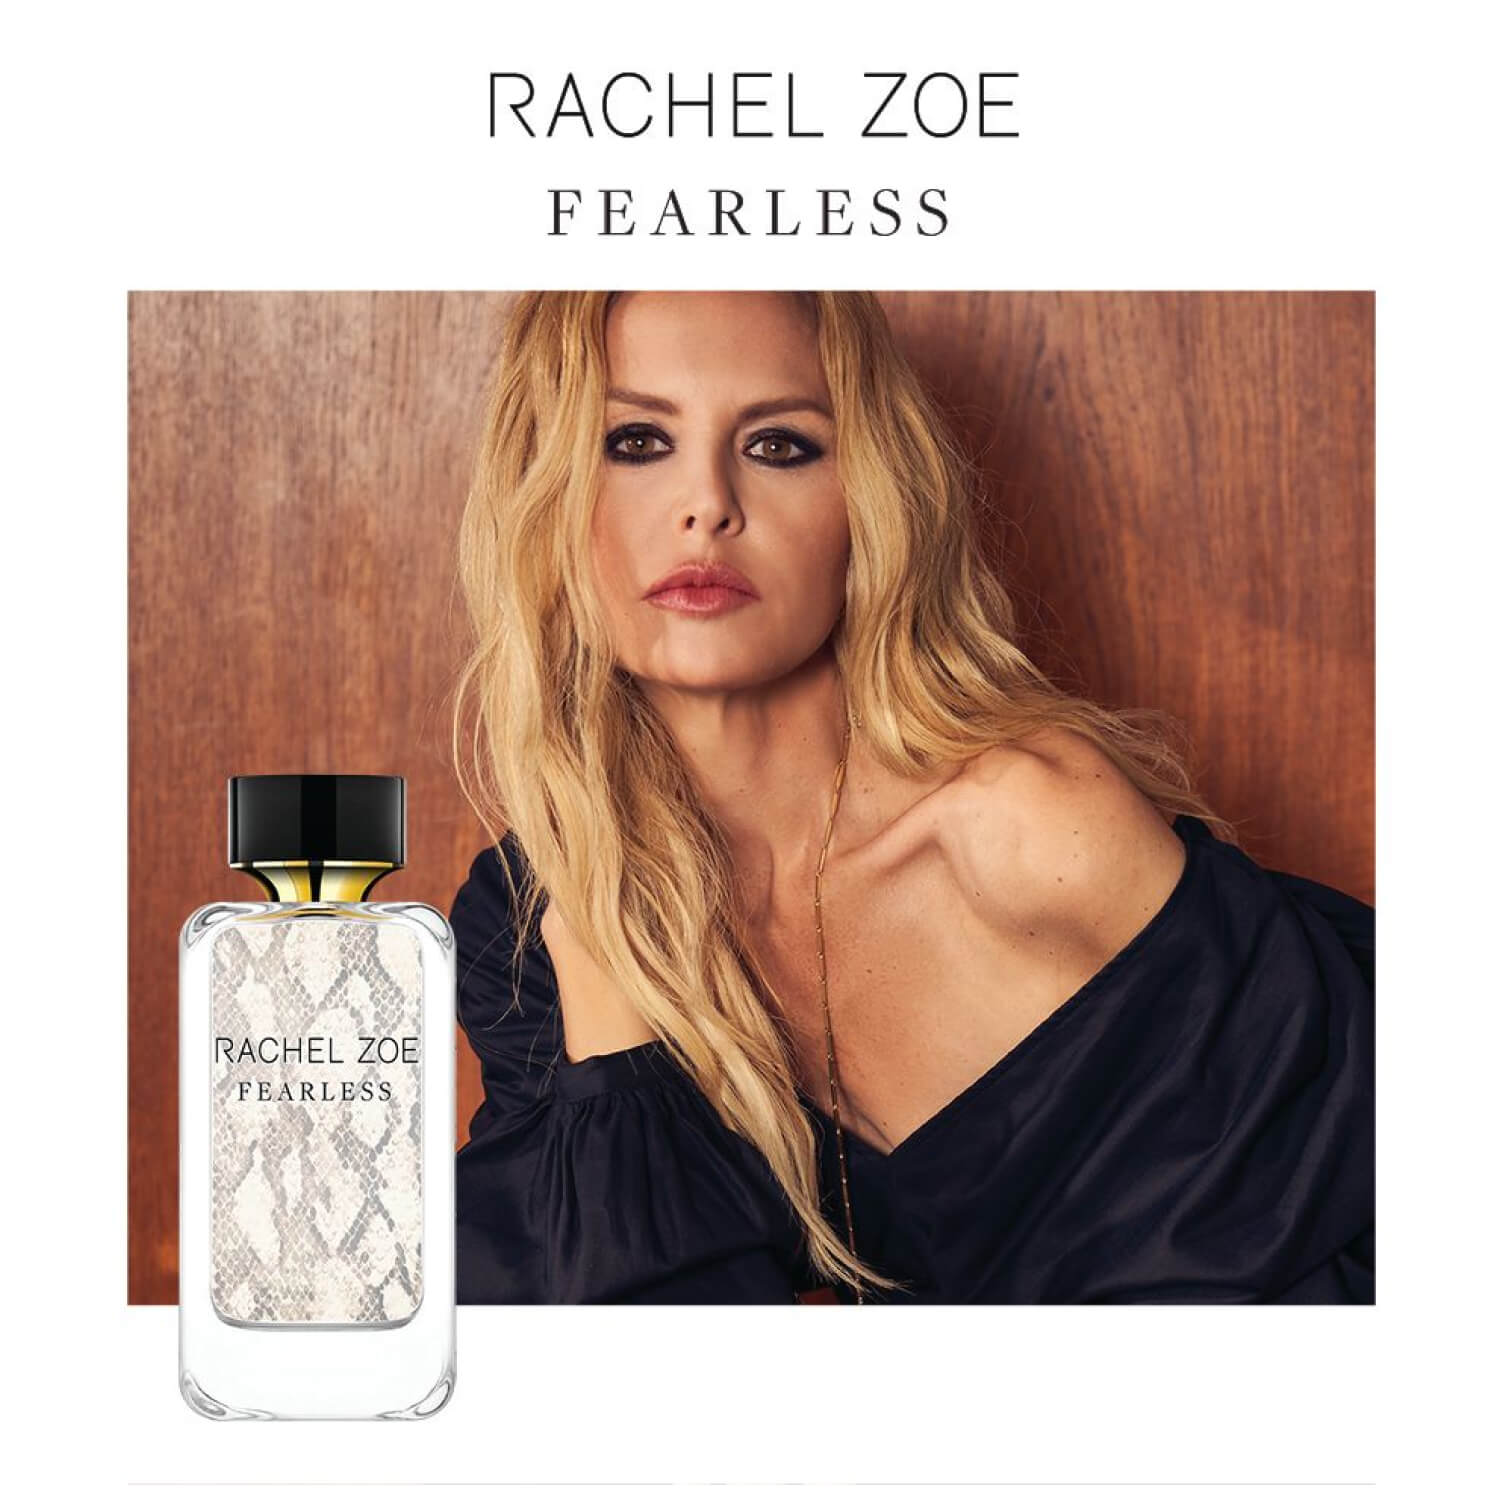 New to Scentbird: Rachel Zoe's Signature Fragrances - Scentbird Blog